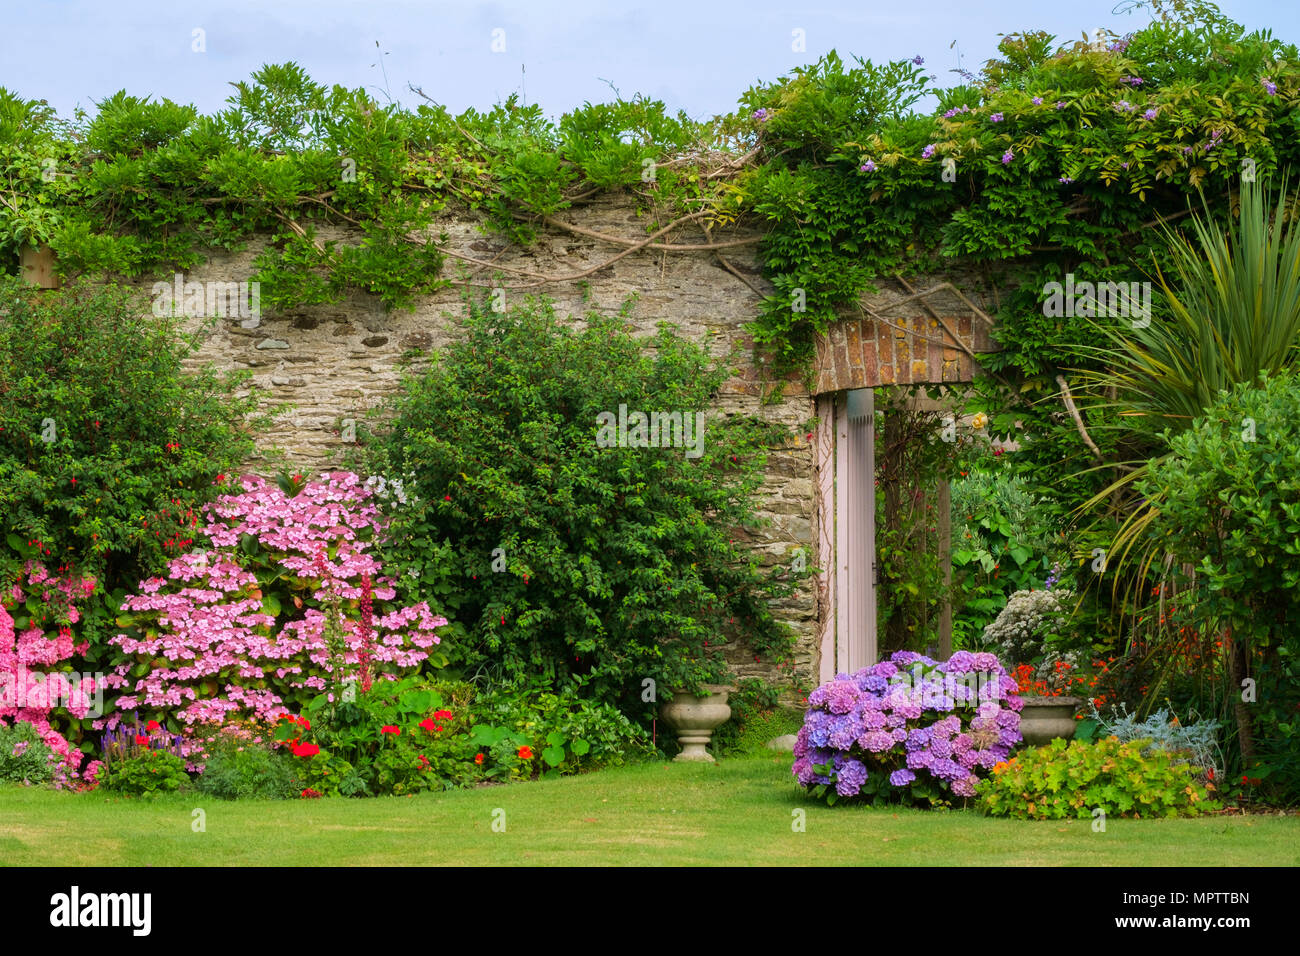 UK gardens. Un été magnifique jardin clos border parterre afficher y compris divers hortensias. Une porte ouverte présente un aperçu d'un potager clos au-delà. Banque D'Images